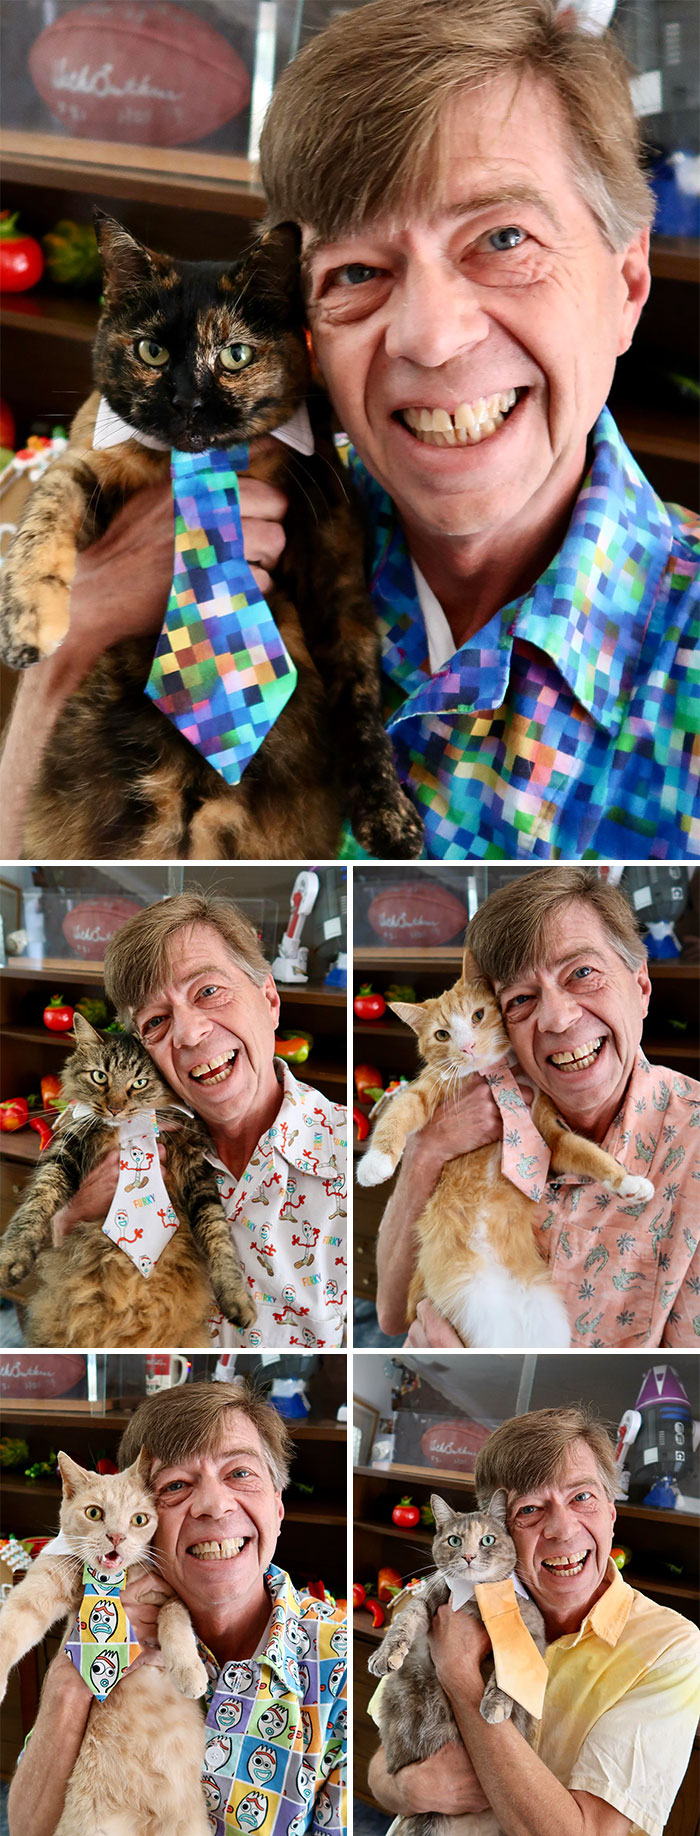 He estado cosiendo camisas, junto a corbatas a juego para mis 5 gatos. Ha sido divertido. Espero que les gusten